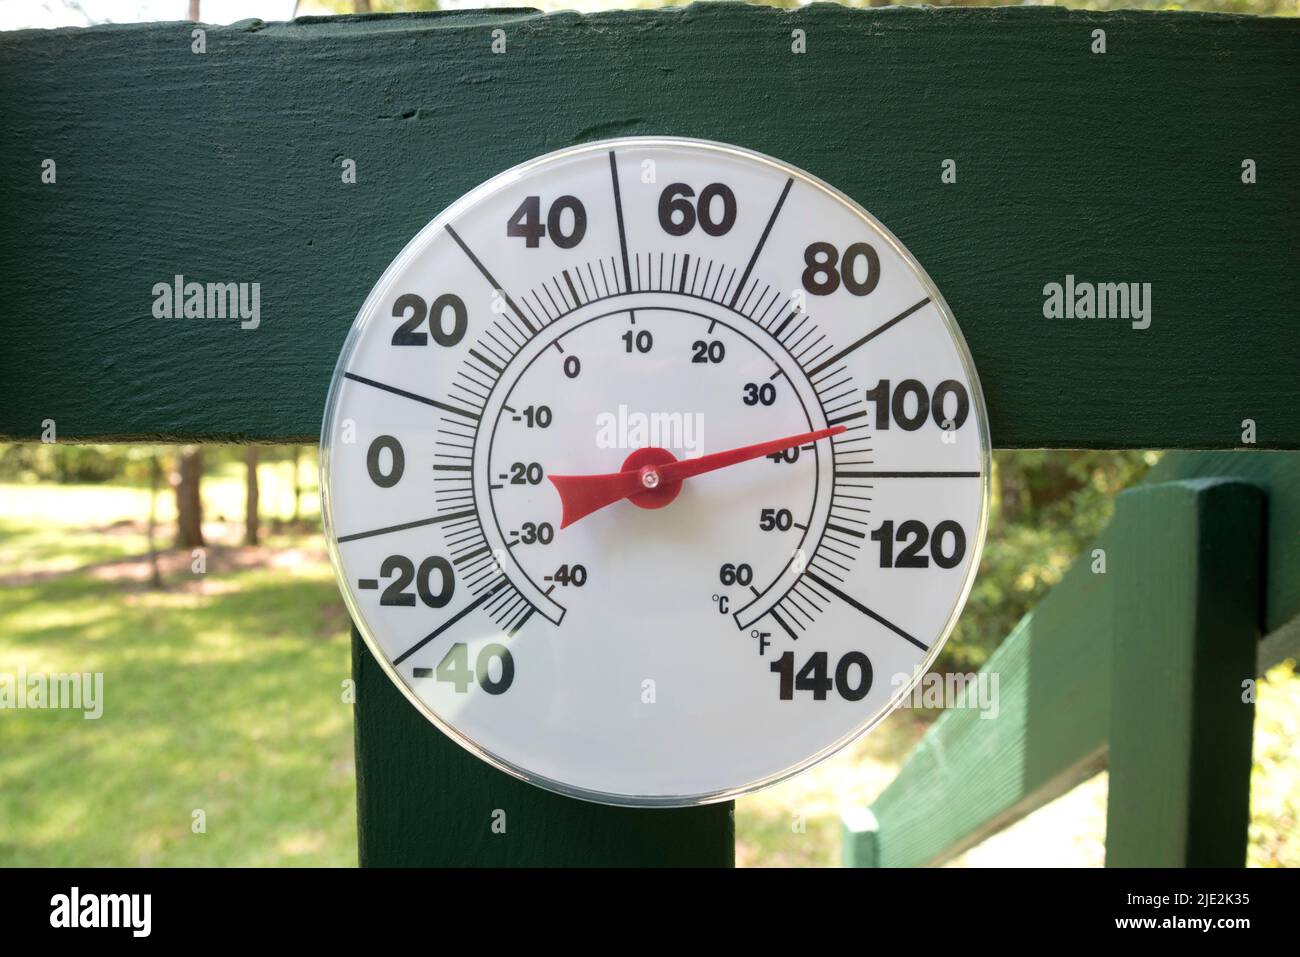 Más de 100 grados de día en el norte de la Florida Central durante la ola de calor récord... (SIN LOGOTIPO EN EL INDICADOR DE TEMPERATURA) Foto de stock